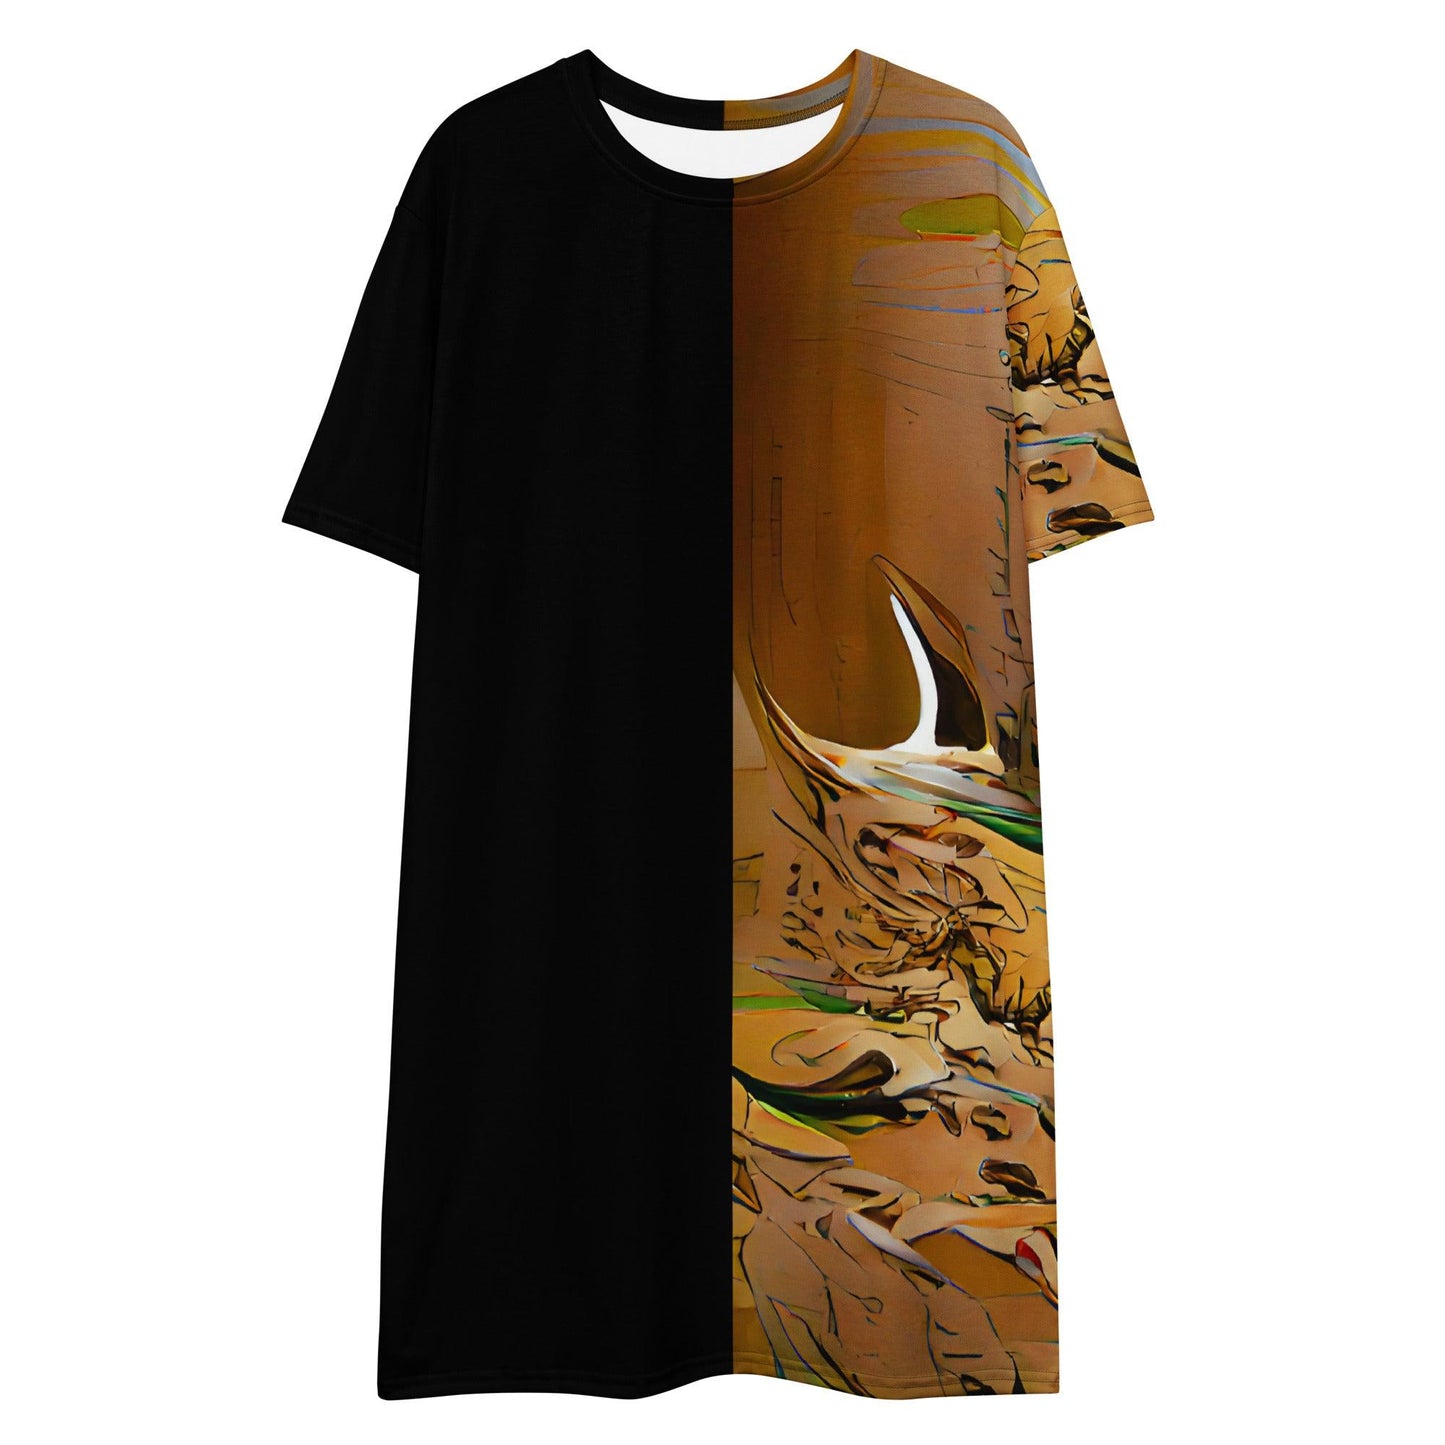 Half Black Half Gaolang - Womens T-Shirt Dress - iSAW Company